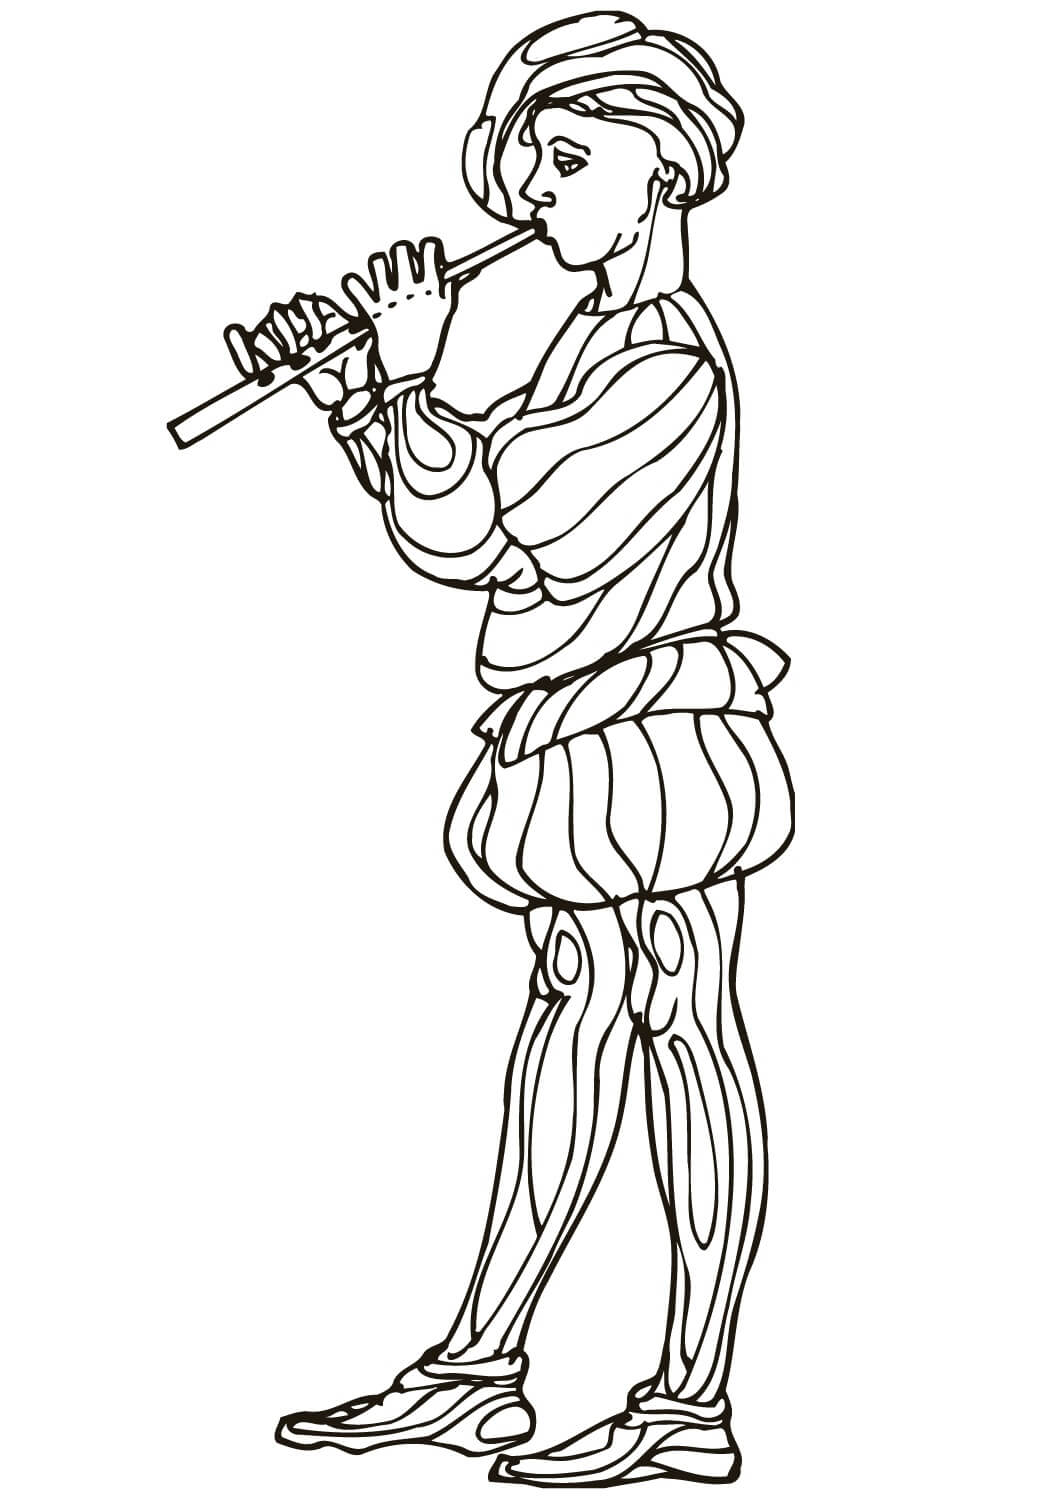 Meisje dat fluit speelt